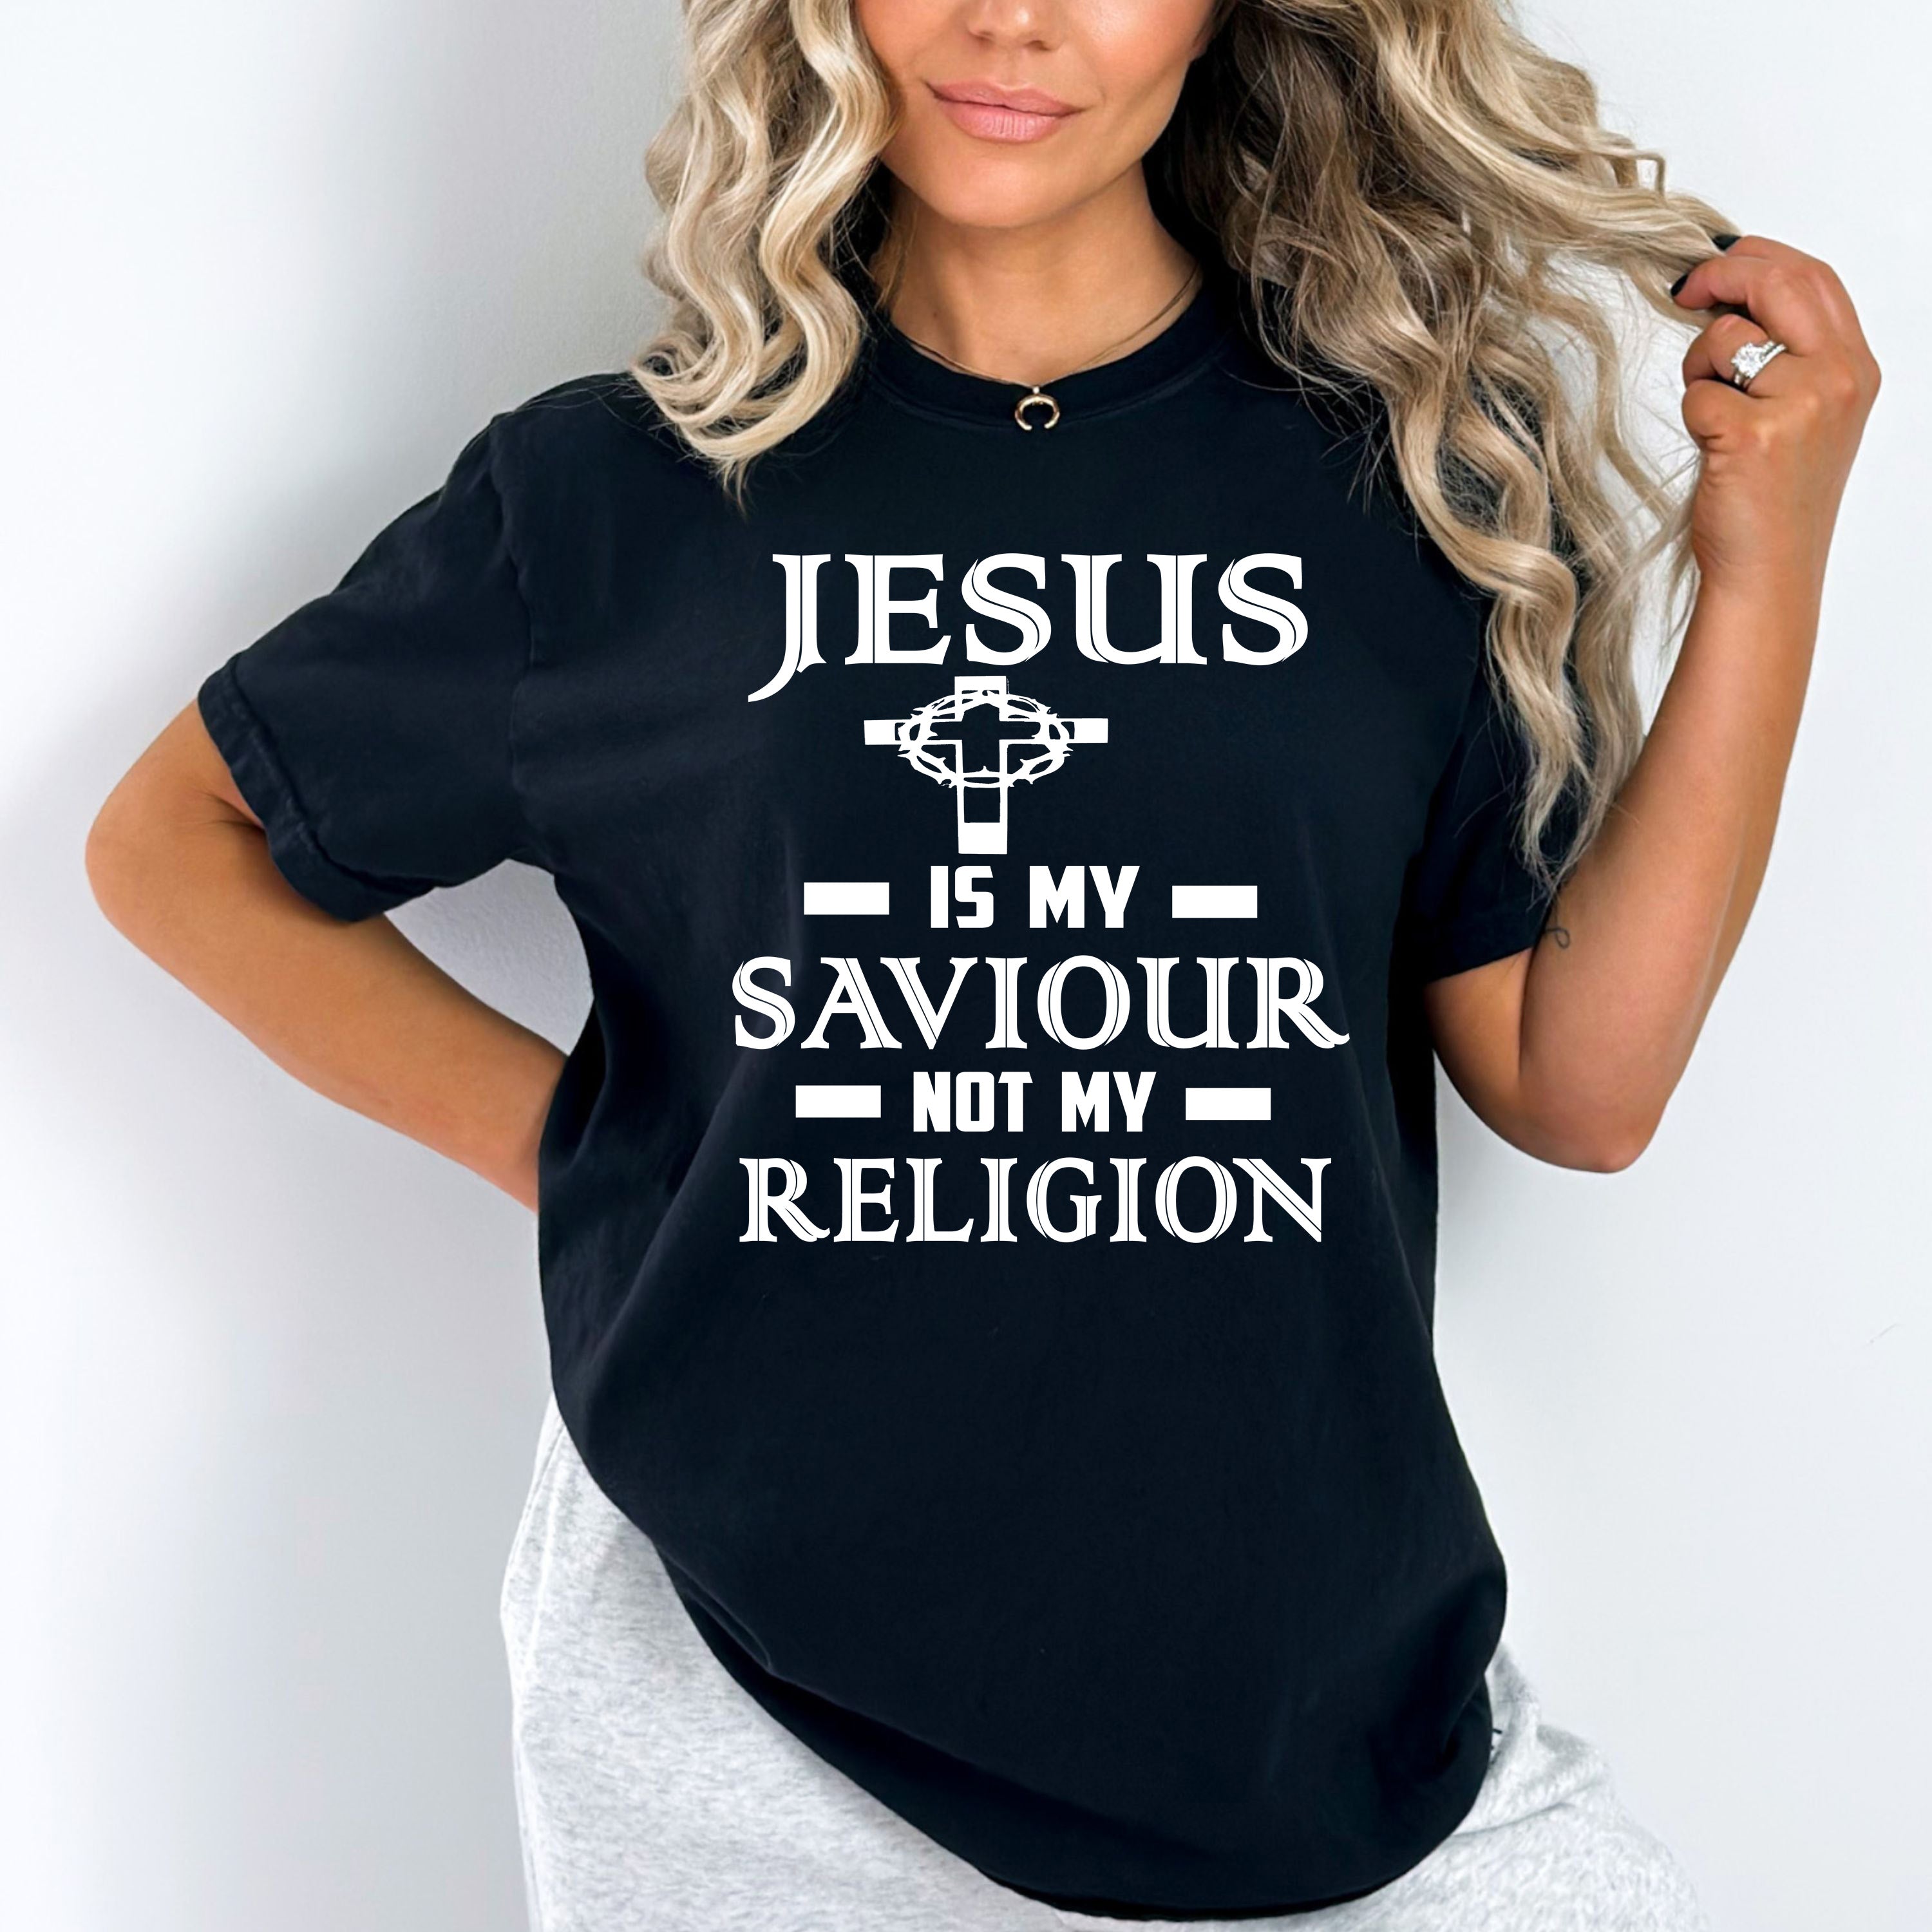 "Jesus is My Saviour Not My Religion"